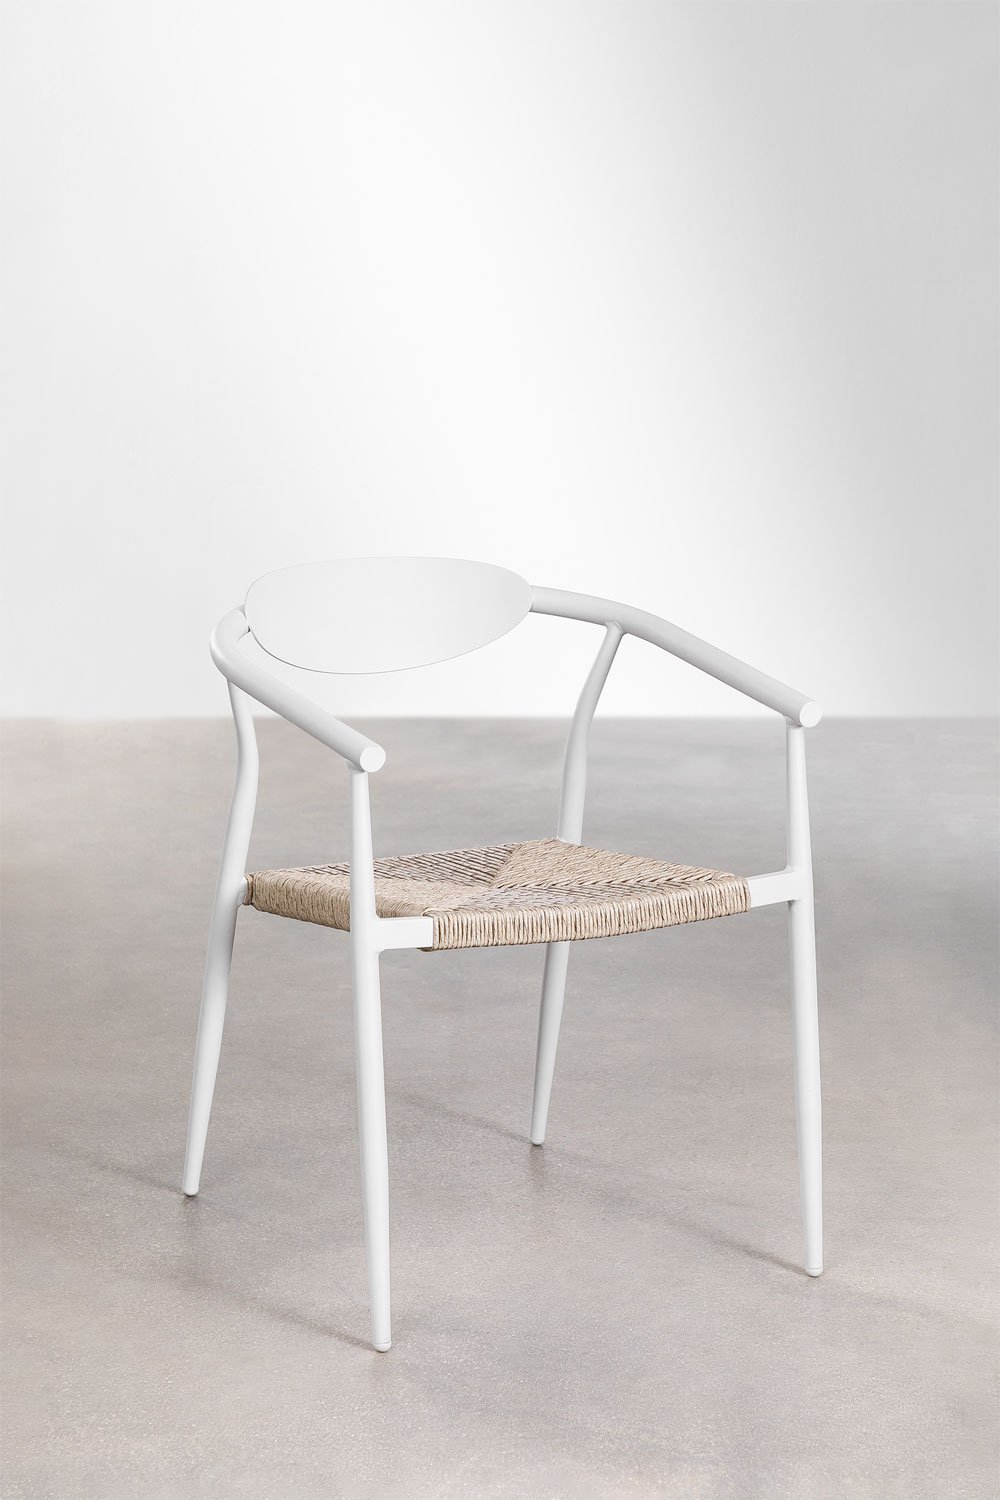 Confezione da 4 sedie da giardino con braccioli in alluminio e rattan sintetico Marsha, immagine della galleria 1